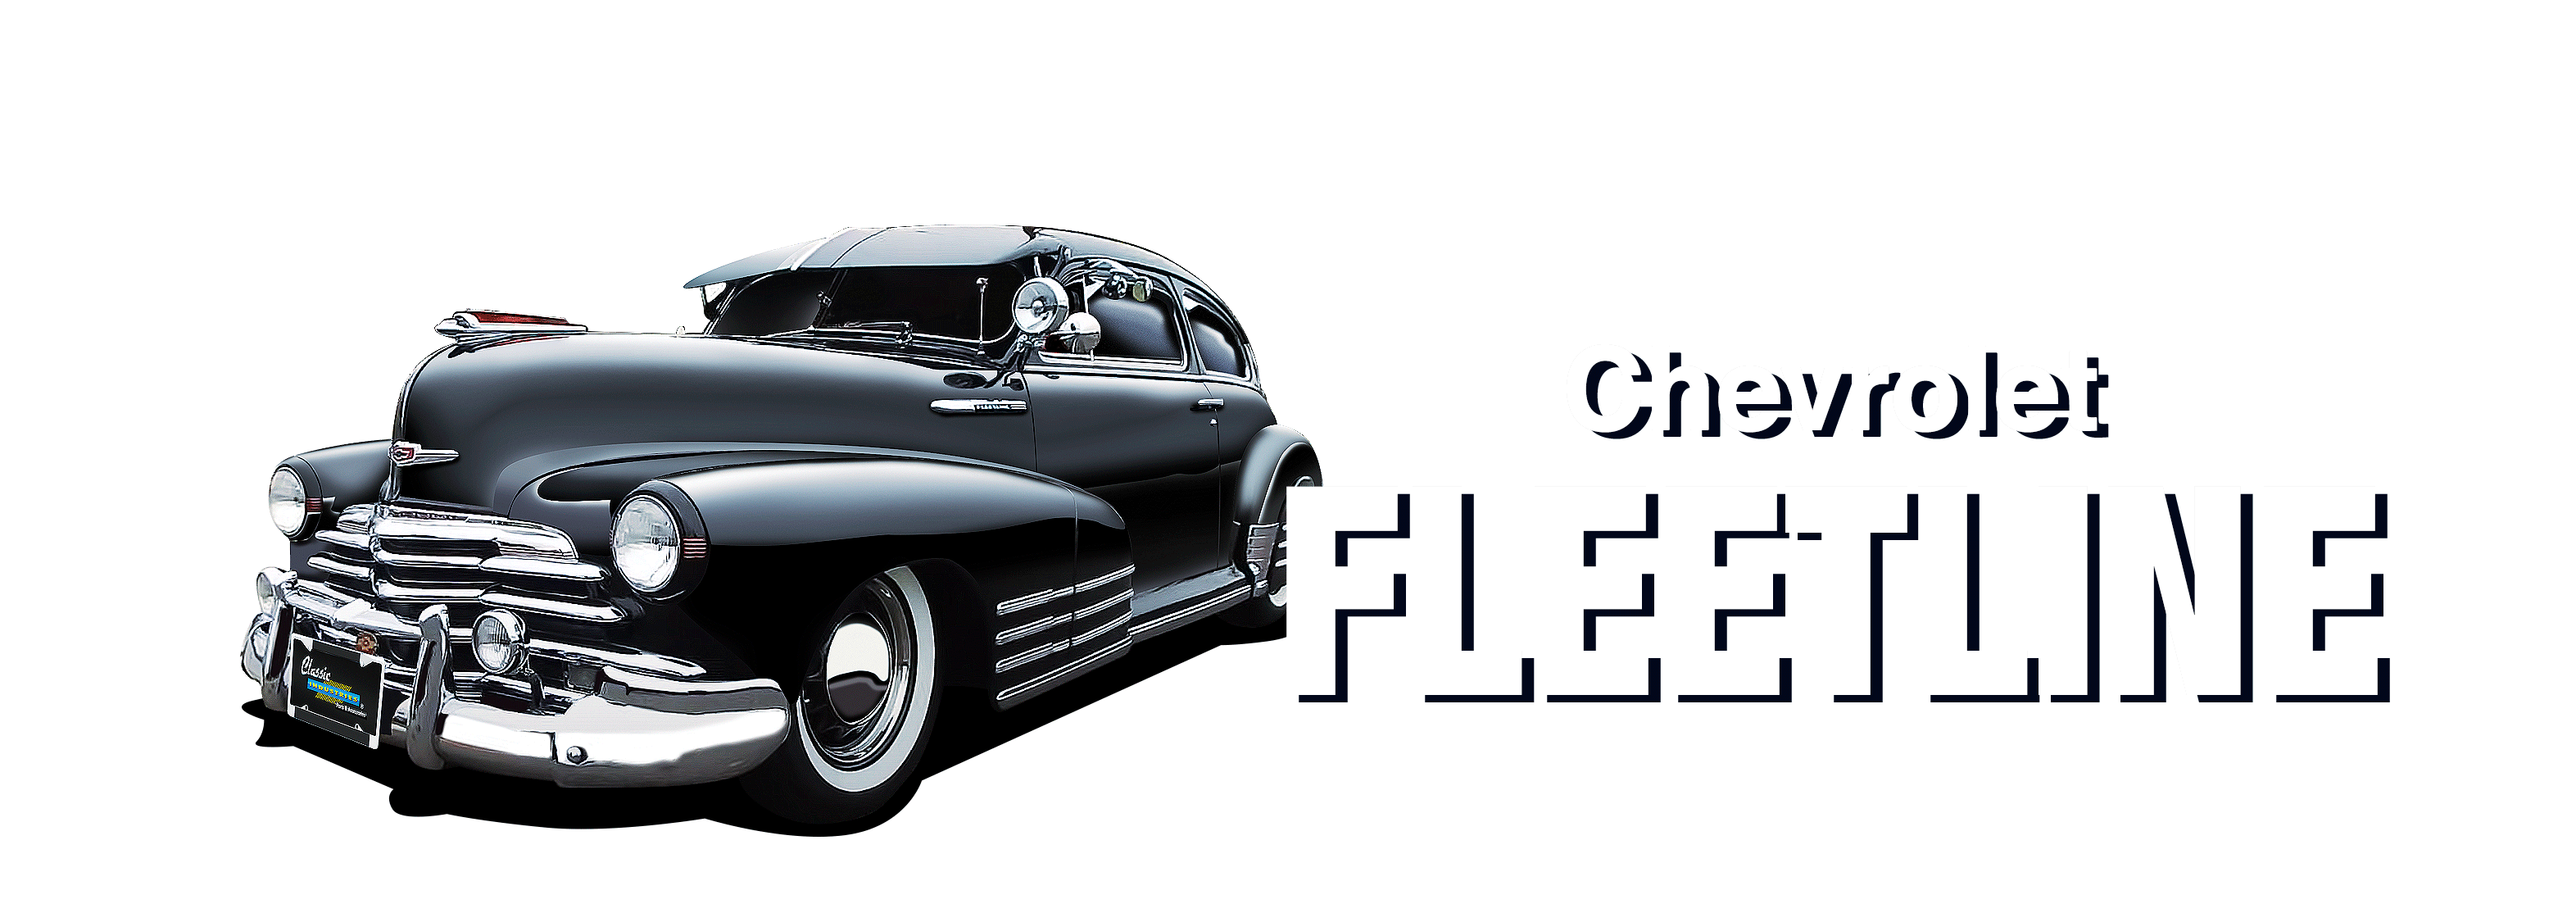 Chevrolet-Fleetline-vehicle-desktop